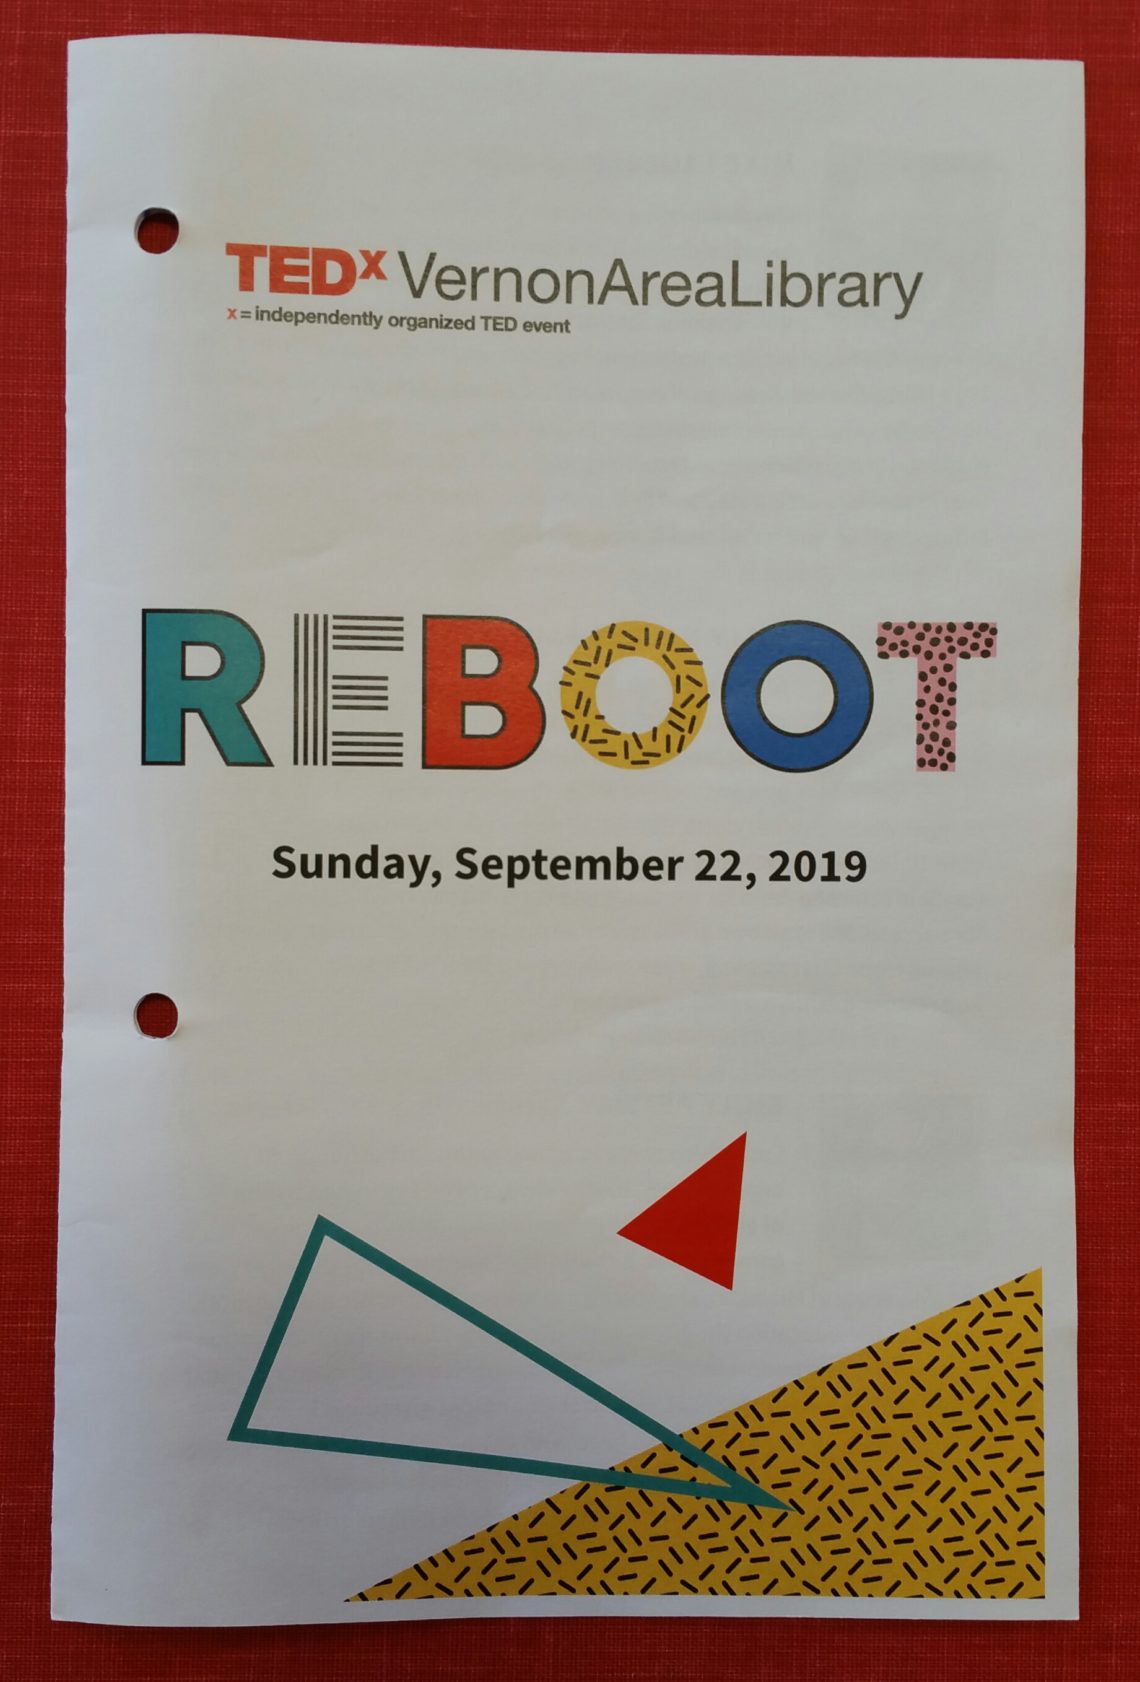 TEDx--REBOOT